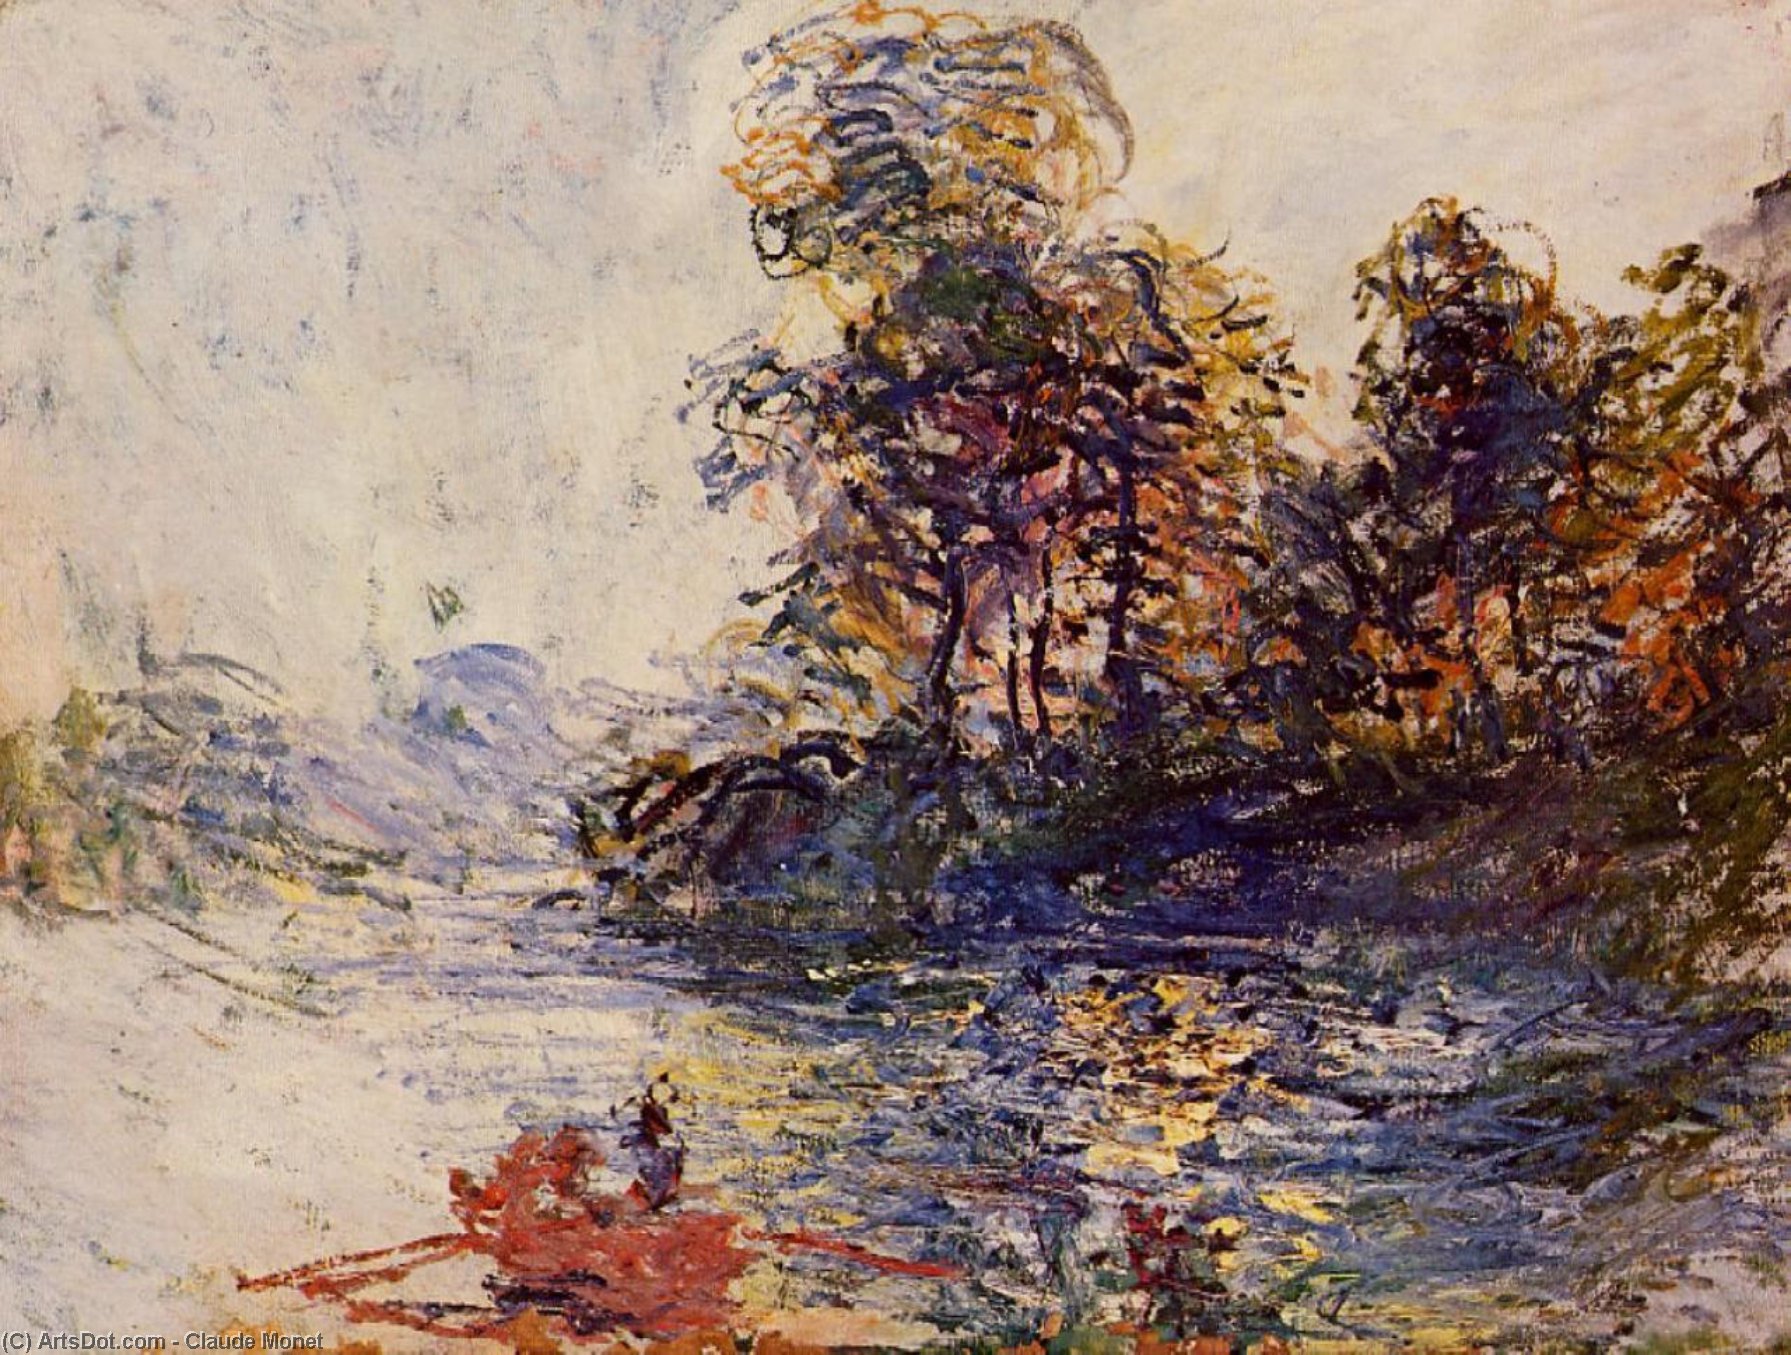 Compre Museu De Reproduções De Arte O rio, 1881 por Claude Monet (1840-1926, France) | ArtsDot.com